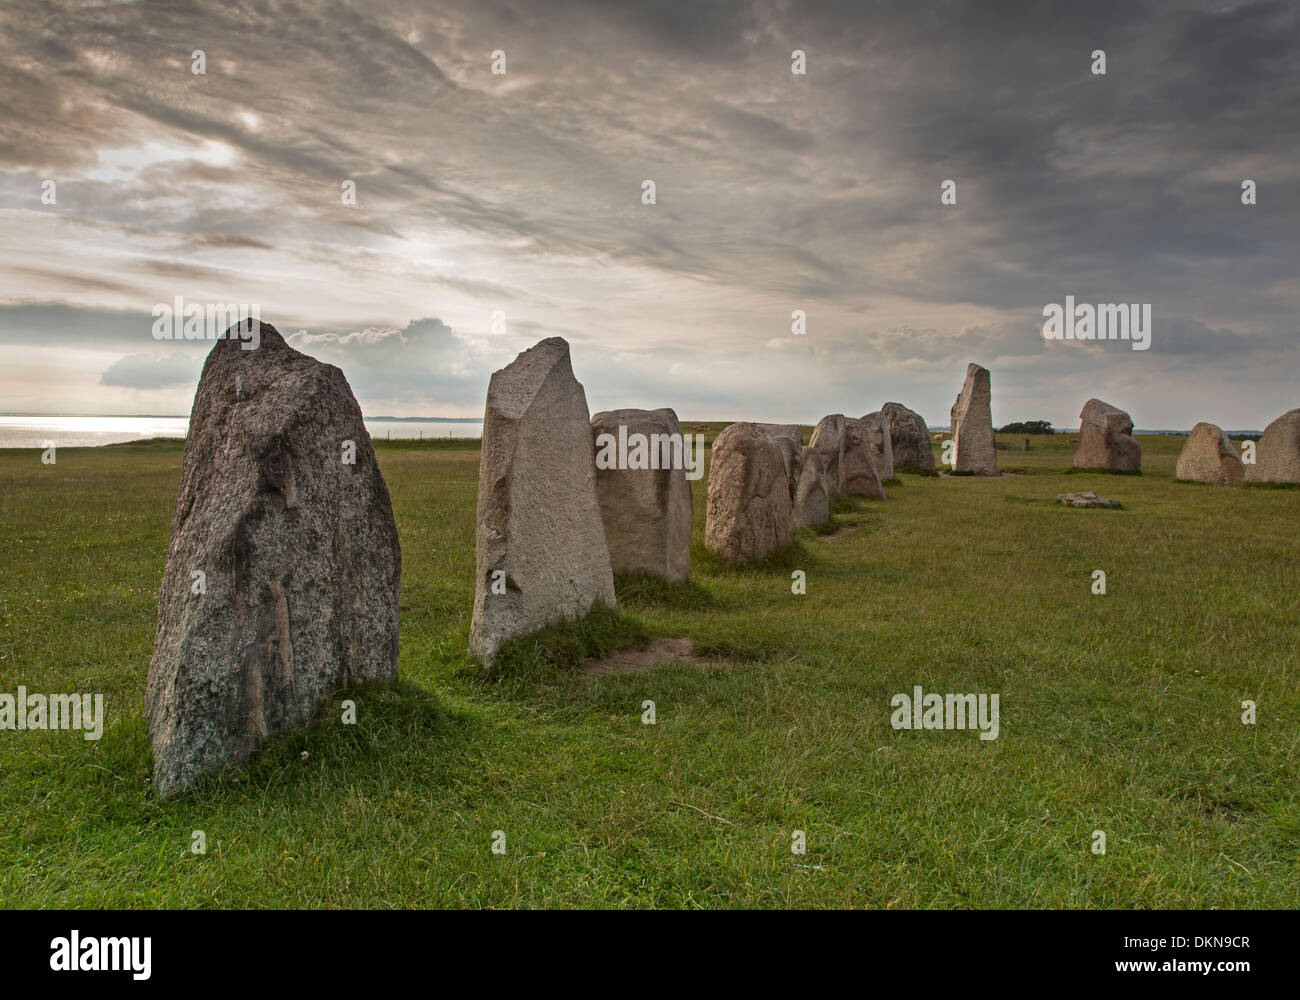 Impostazione di pietra Ales Stenar, Schonen, Svezia, Europa Foto Stock